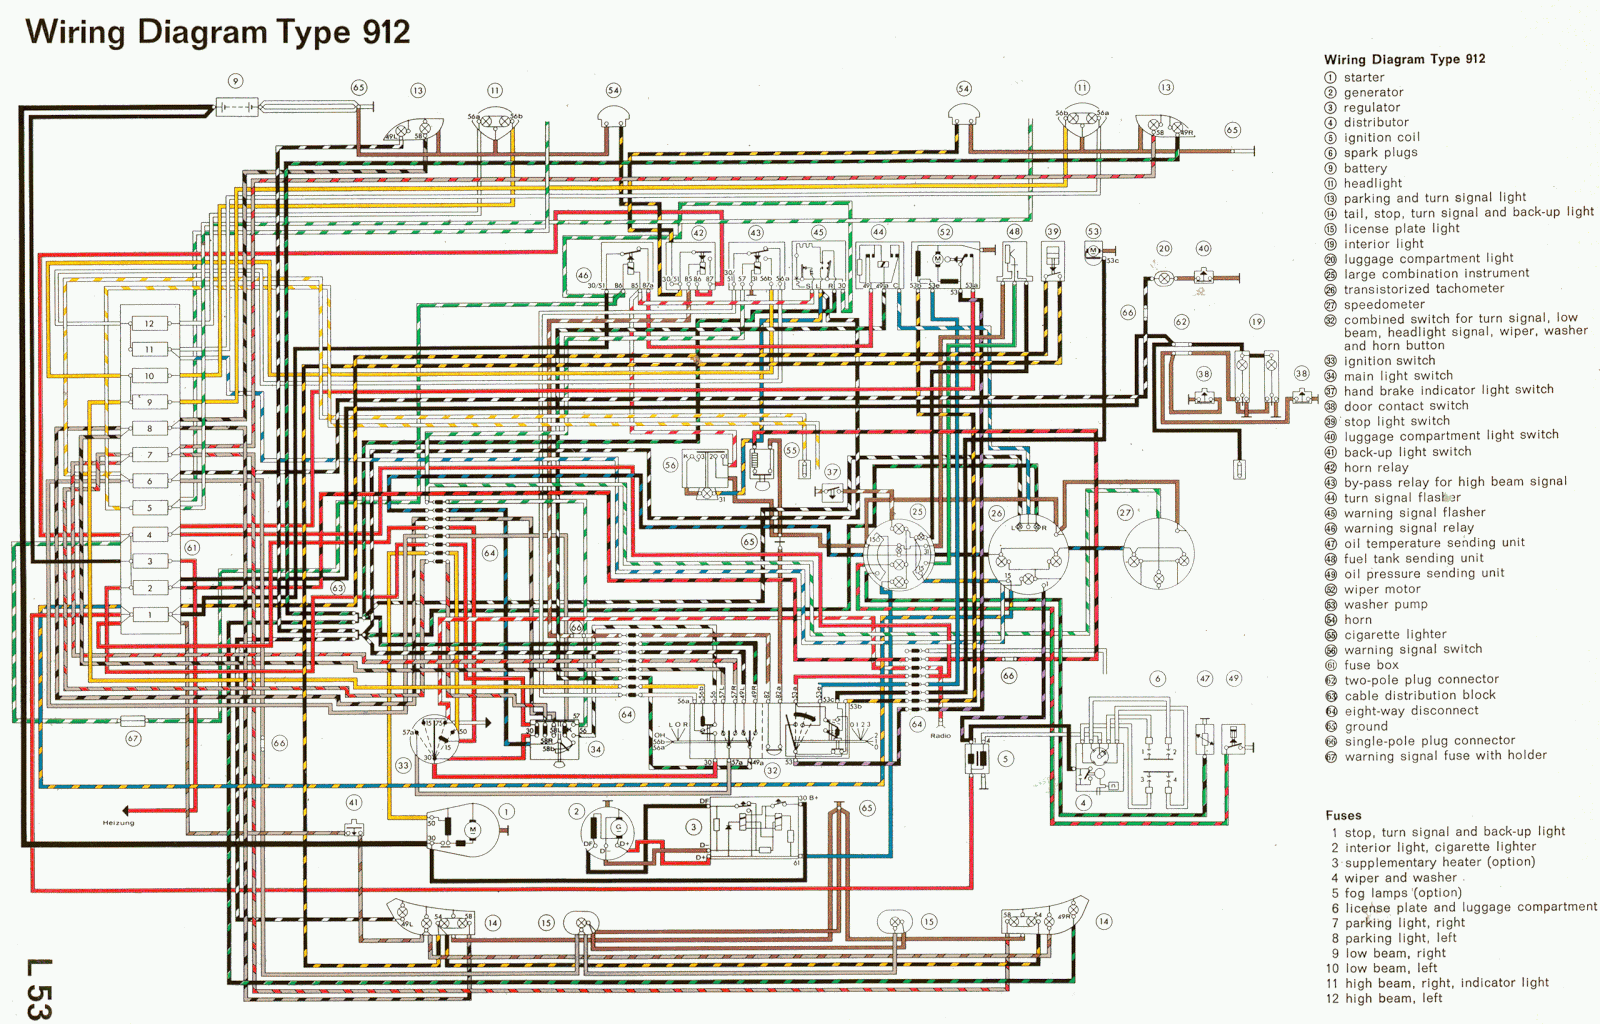 ford f650 truck 2000 turn signal wiring diagram